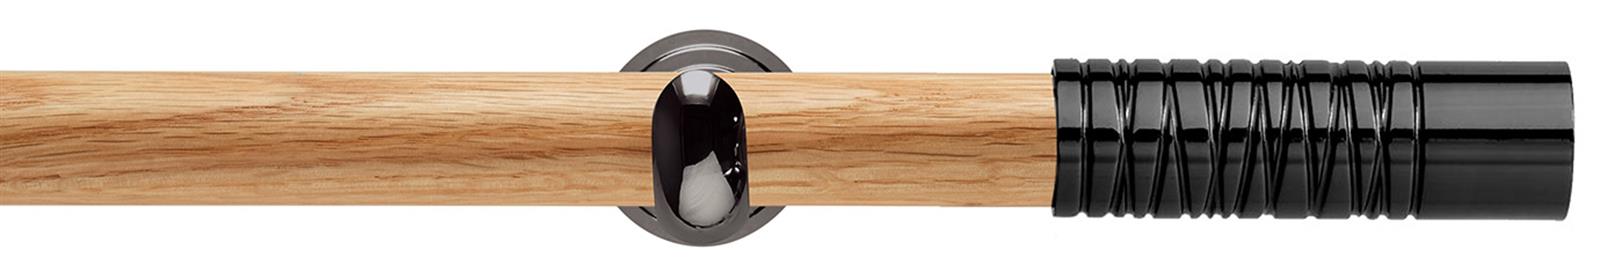 Neo 28mm Oak Wood Eyelet Pole, Black Nickel Cup, Wired Barrel